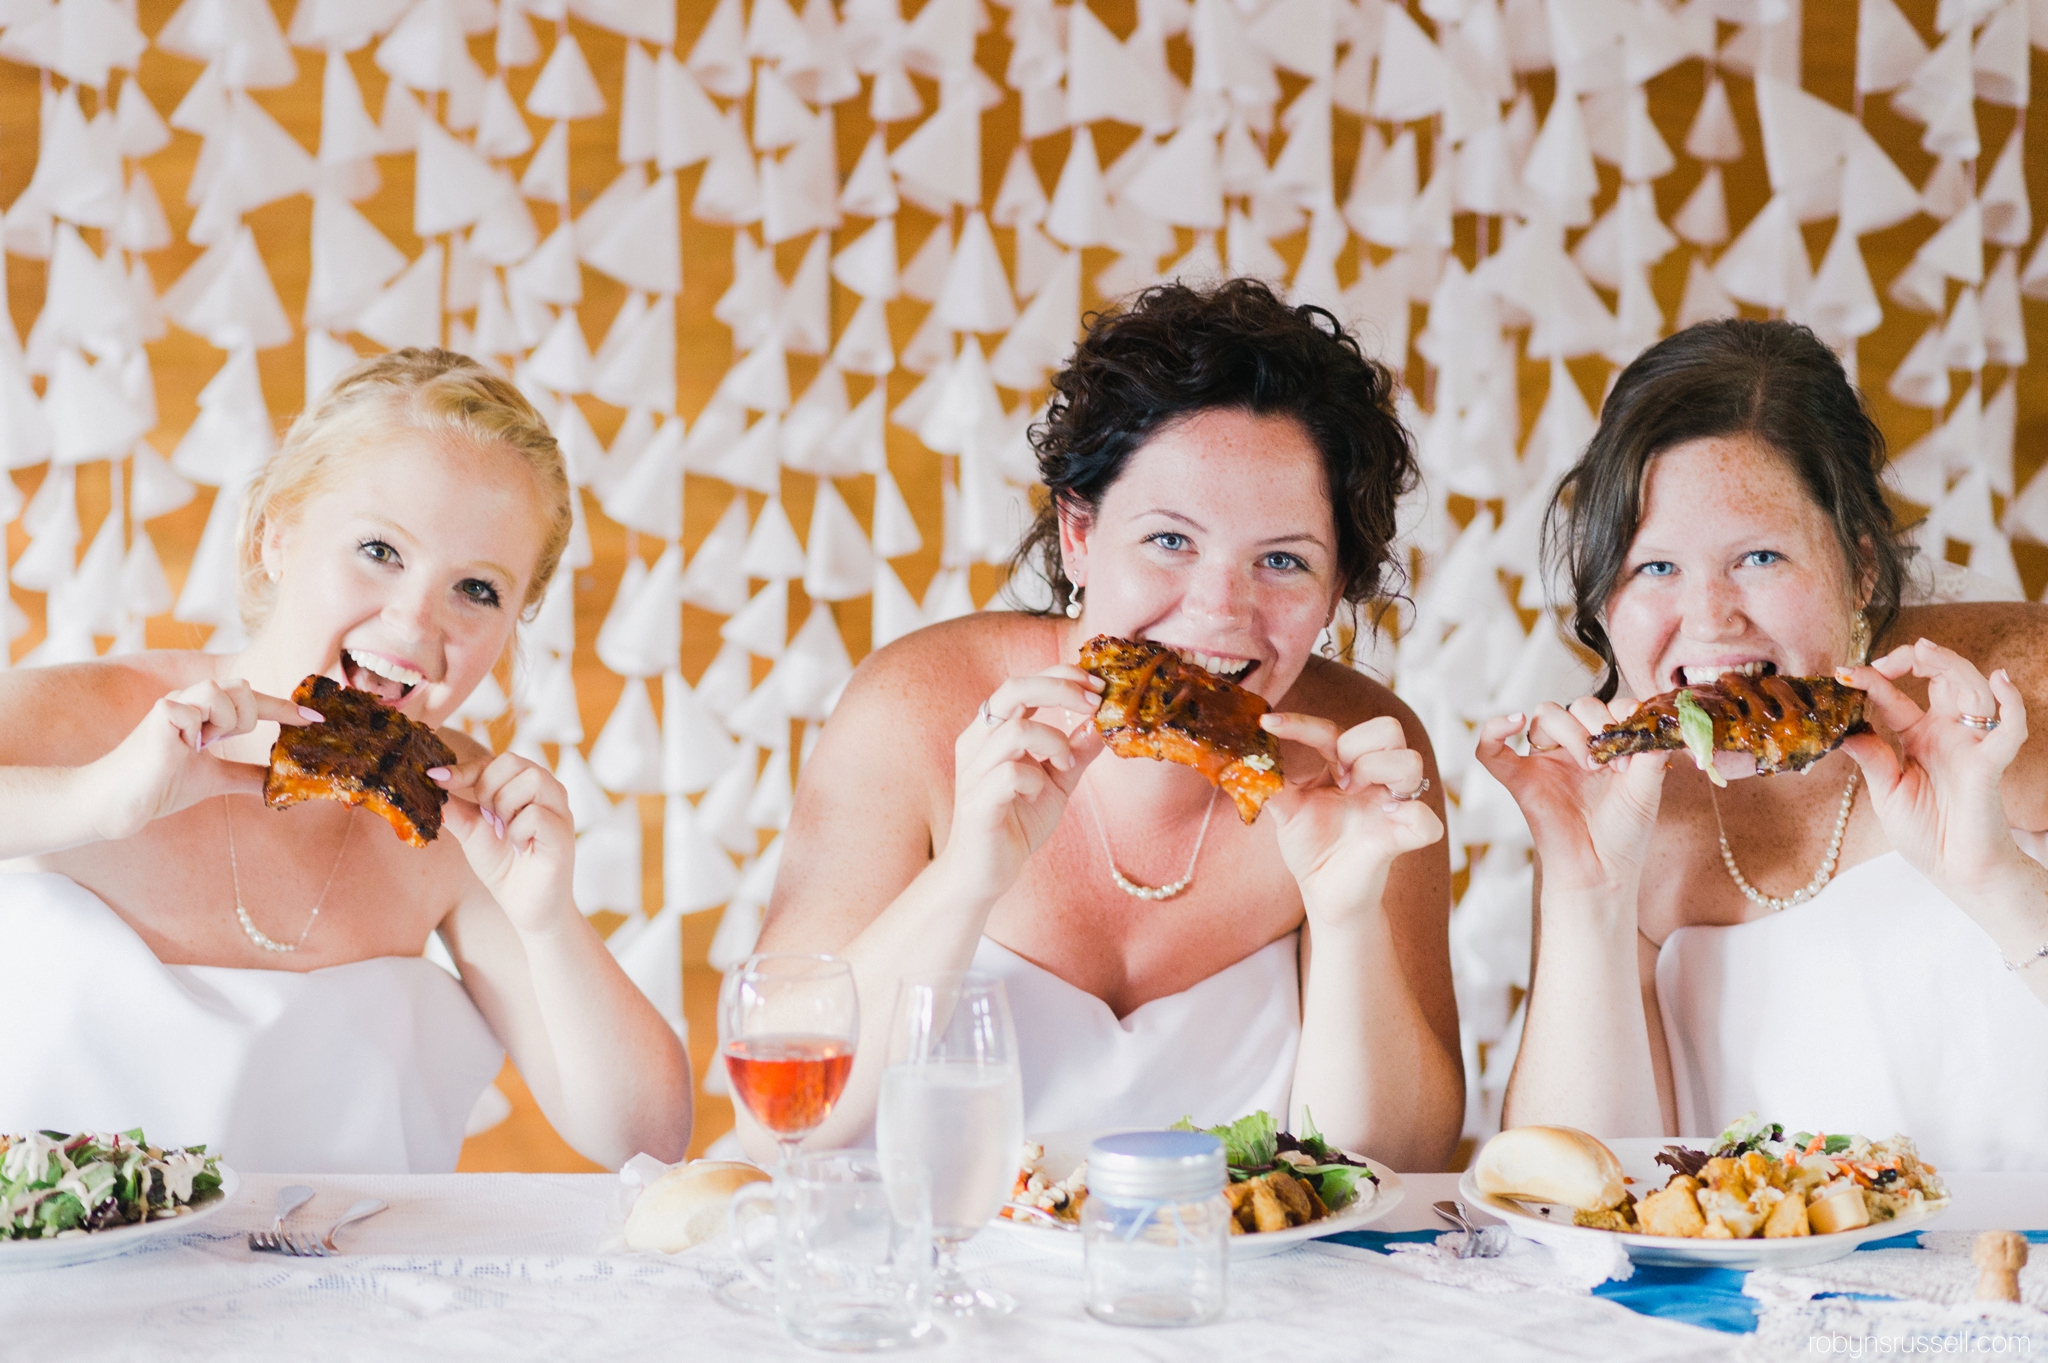 49-bride-and-bridesmaids-eating-ribs.jpg